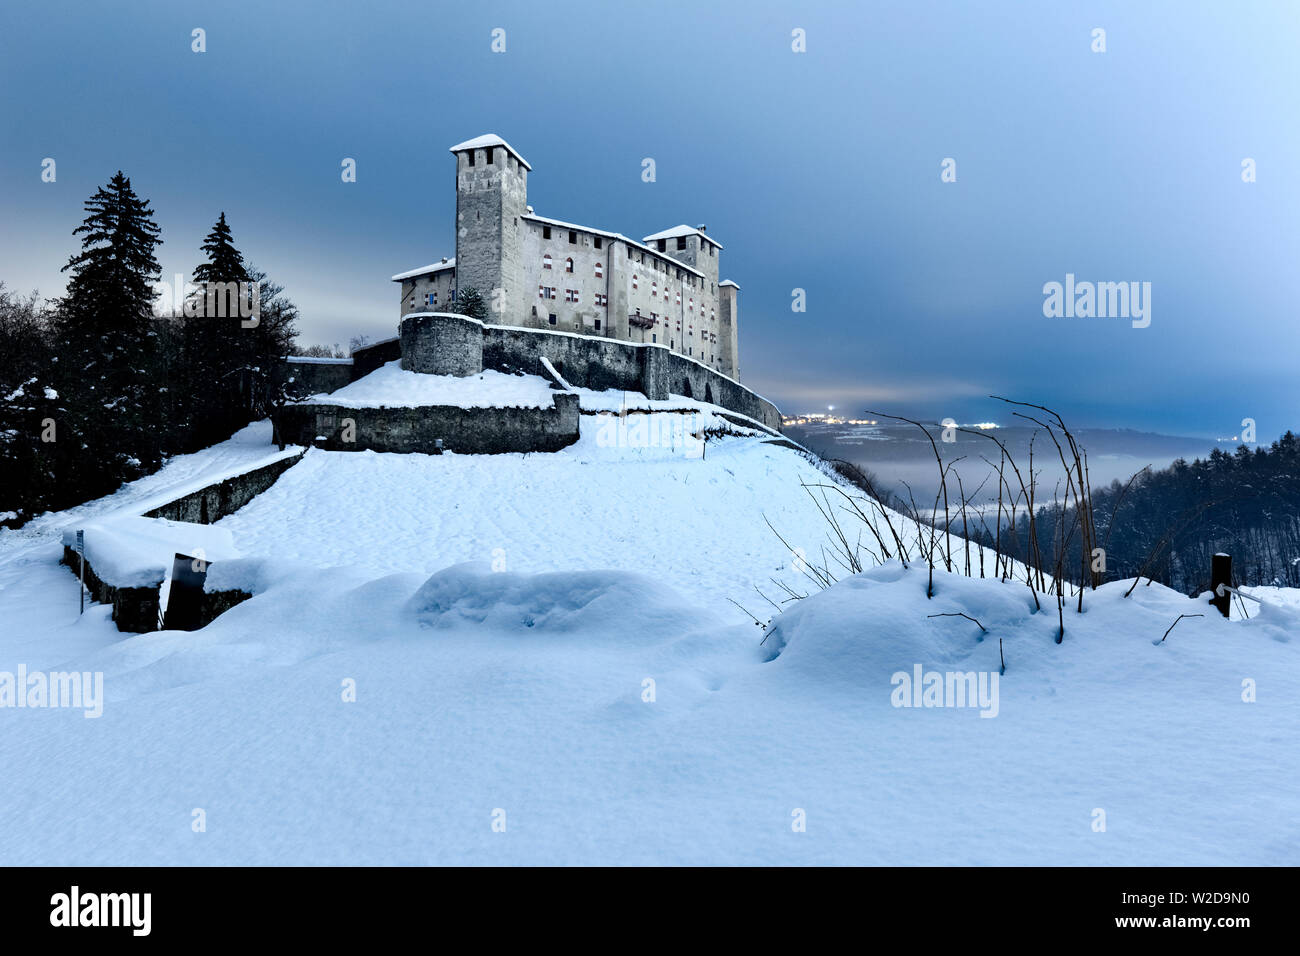 Notte invernale al castello di Cles. Val di Non, in provincia di Trento, Trentino Alto Adige, Italia, Europa. Foto Stock